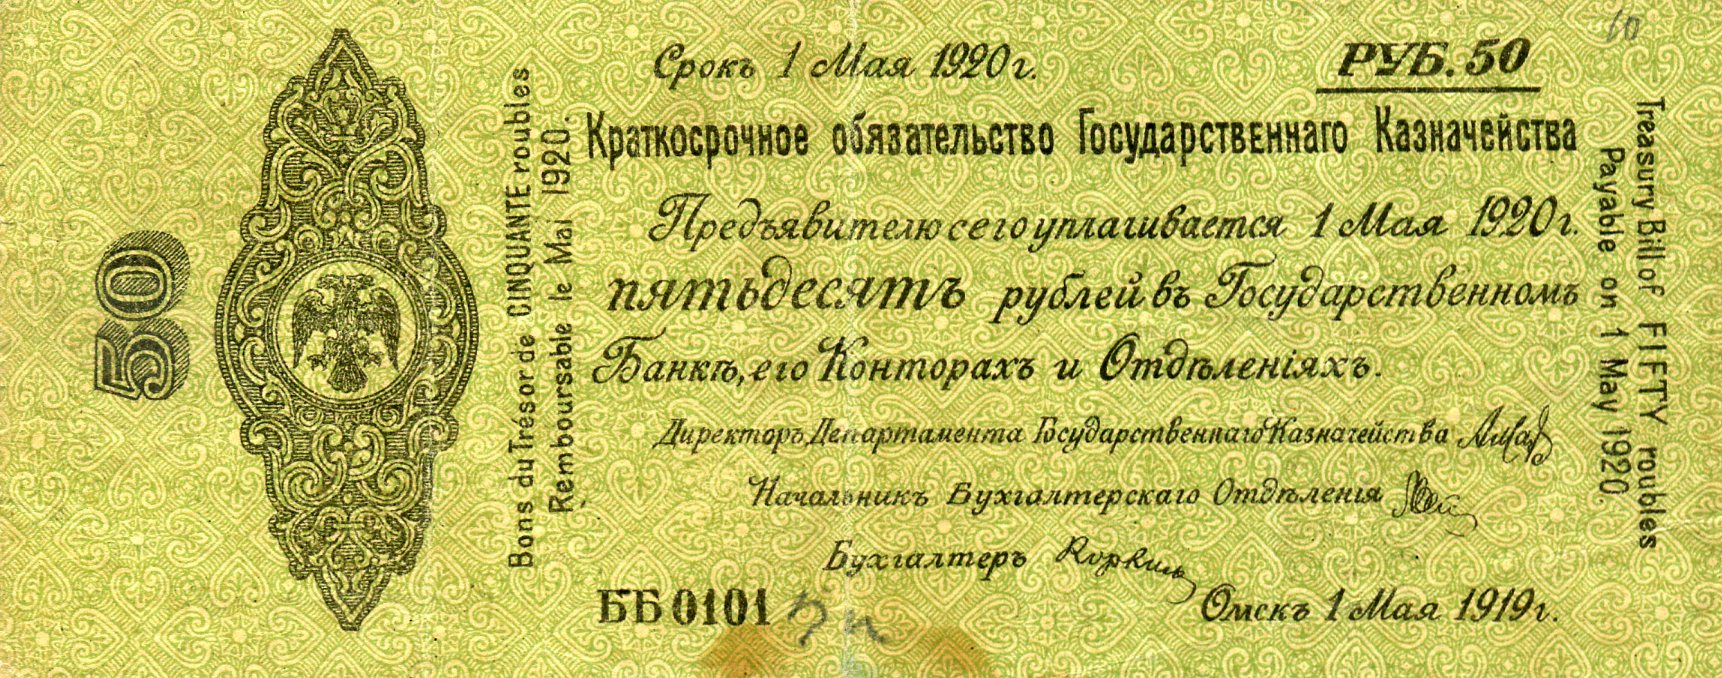 Краткосрочное обязательство государственного казначейства 50 рублей. Омск 1 мая 1919 года. Аверс. Реферат Рефератович.